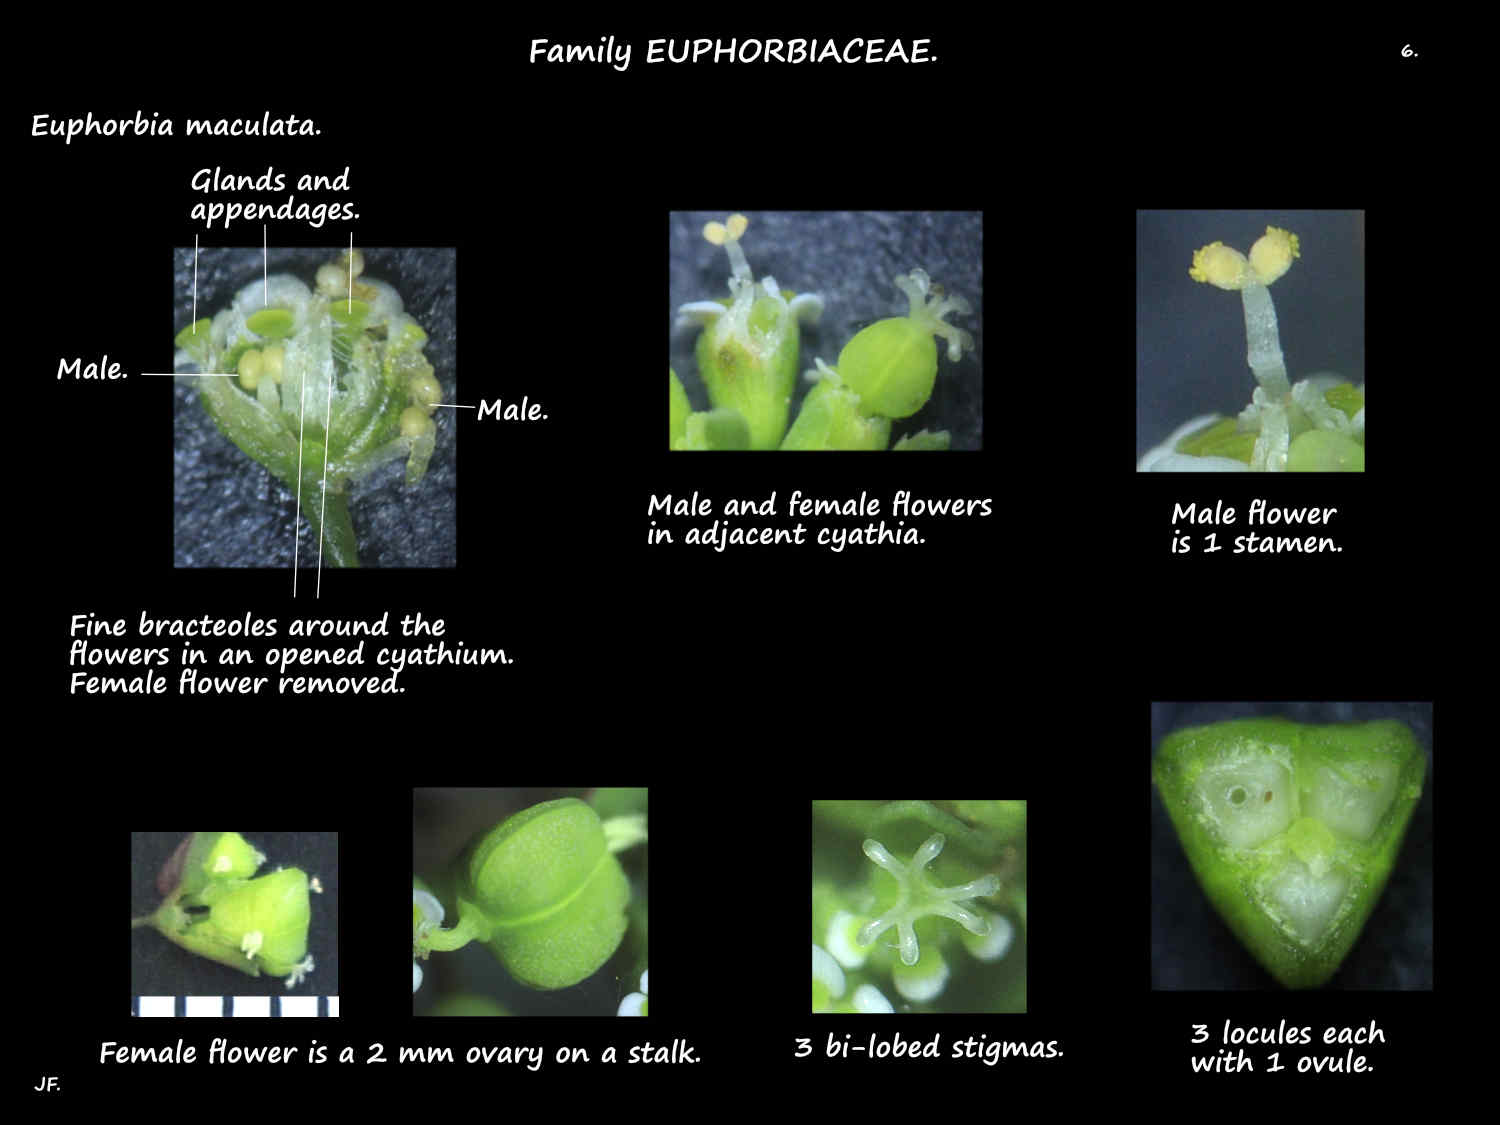 6 Male & female Euphorbia maculata flowers